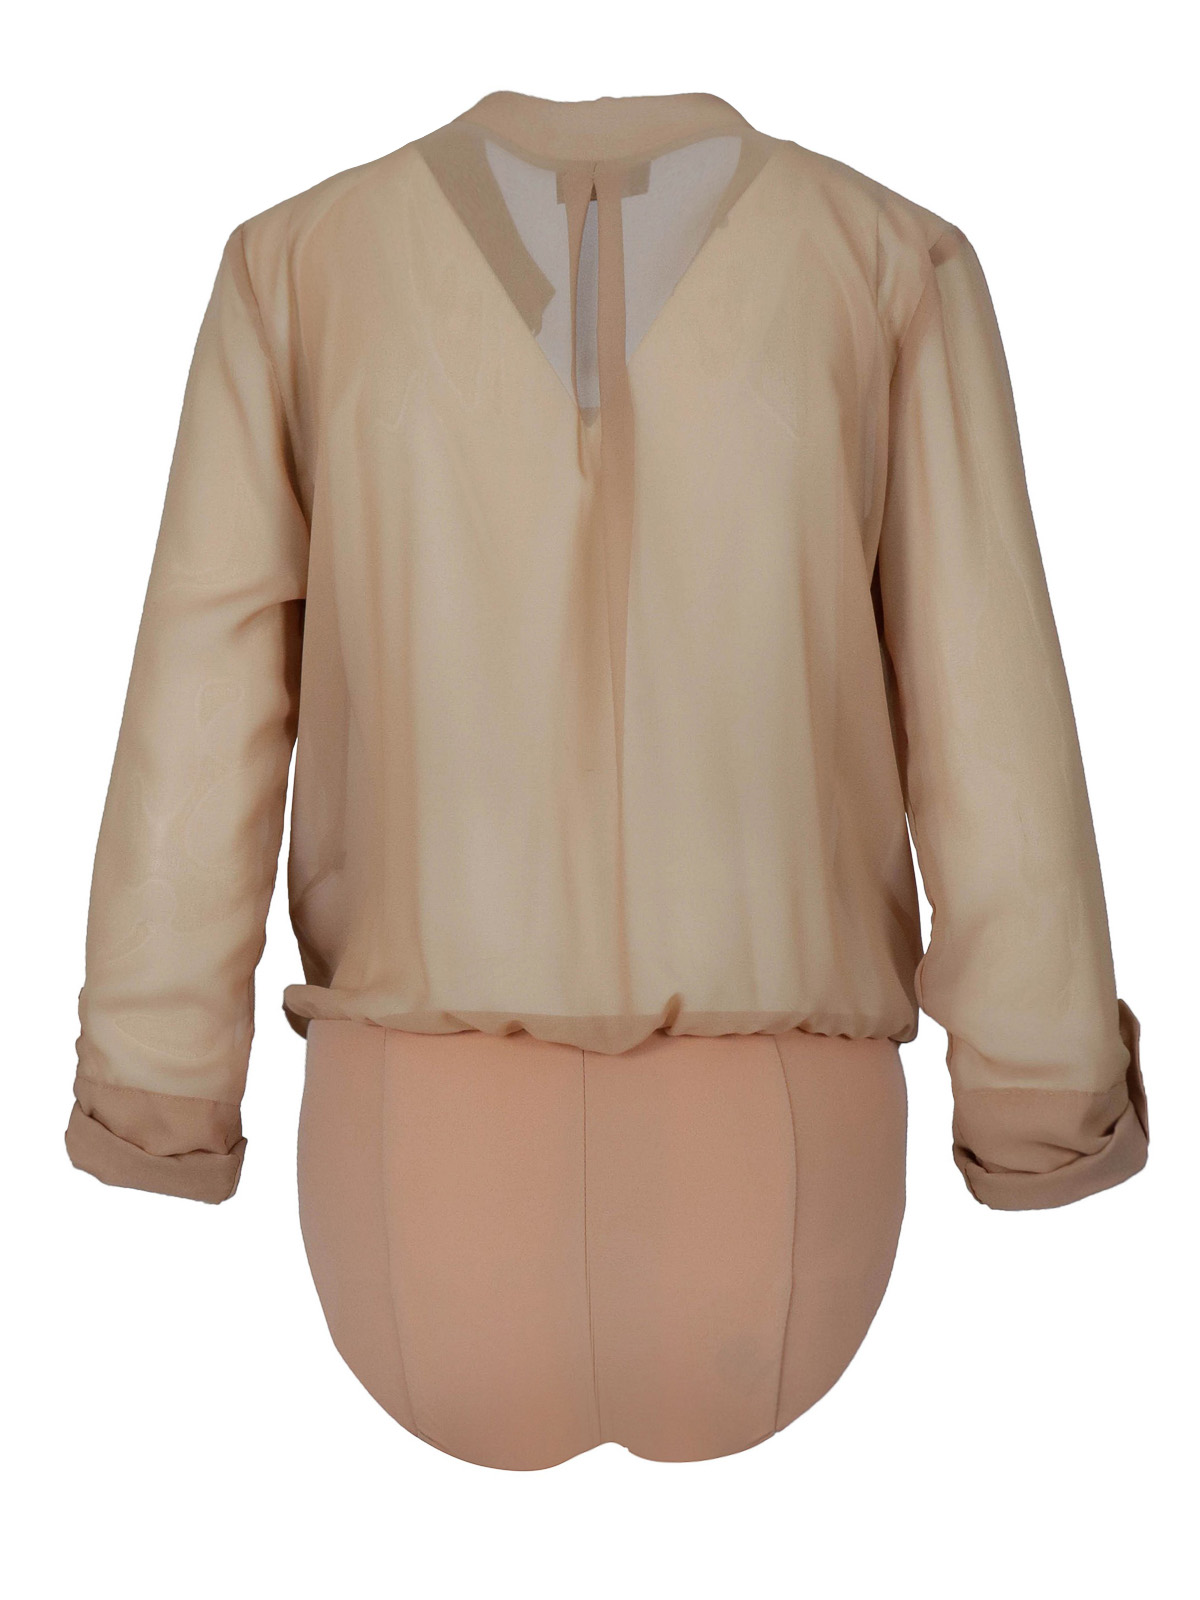 elisabetta-franchi-blouses-quote-bodysuit-blouse-00000224715f00s001.jpg